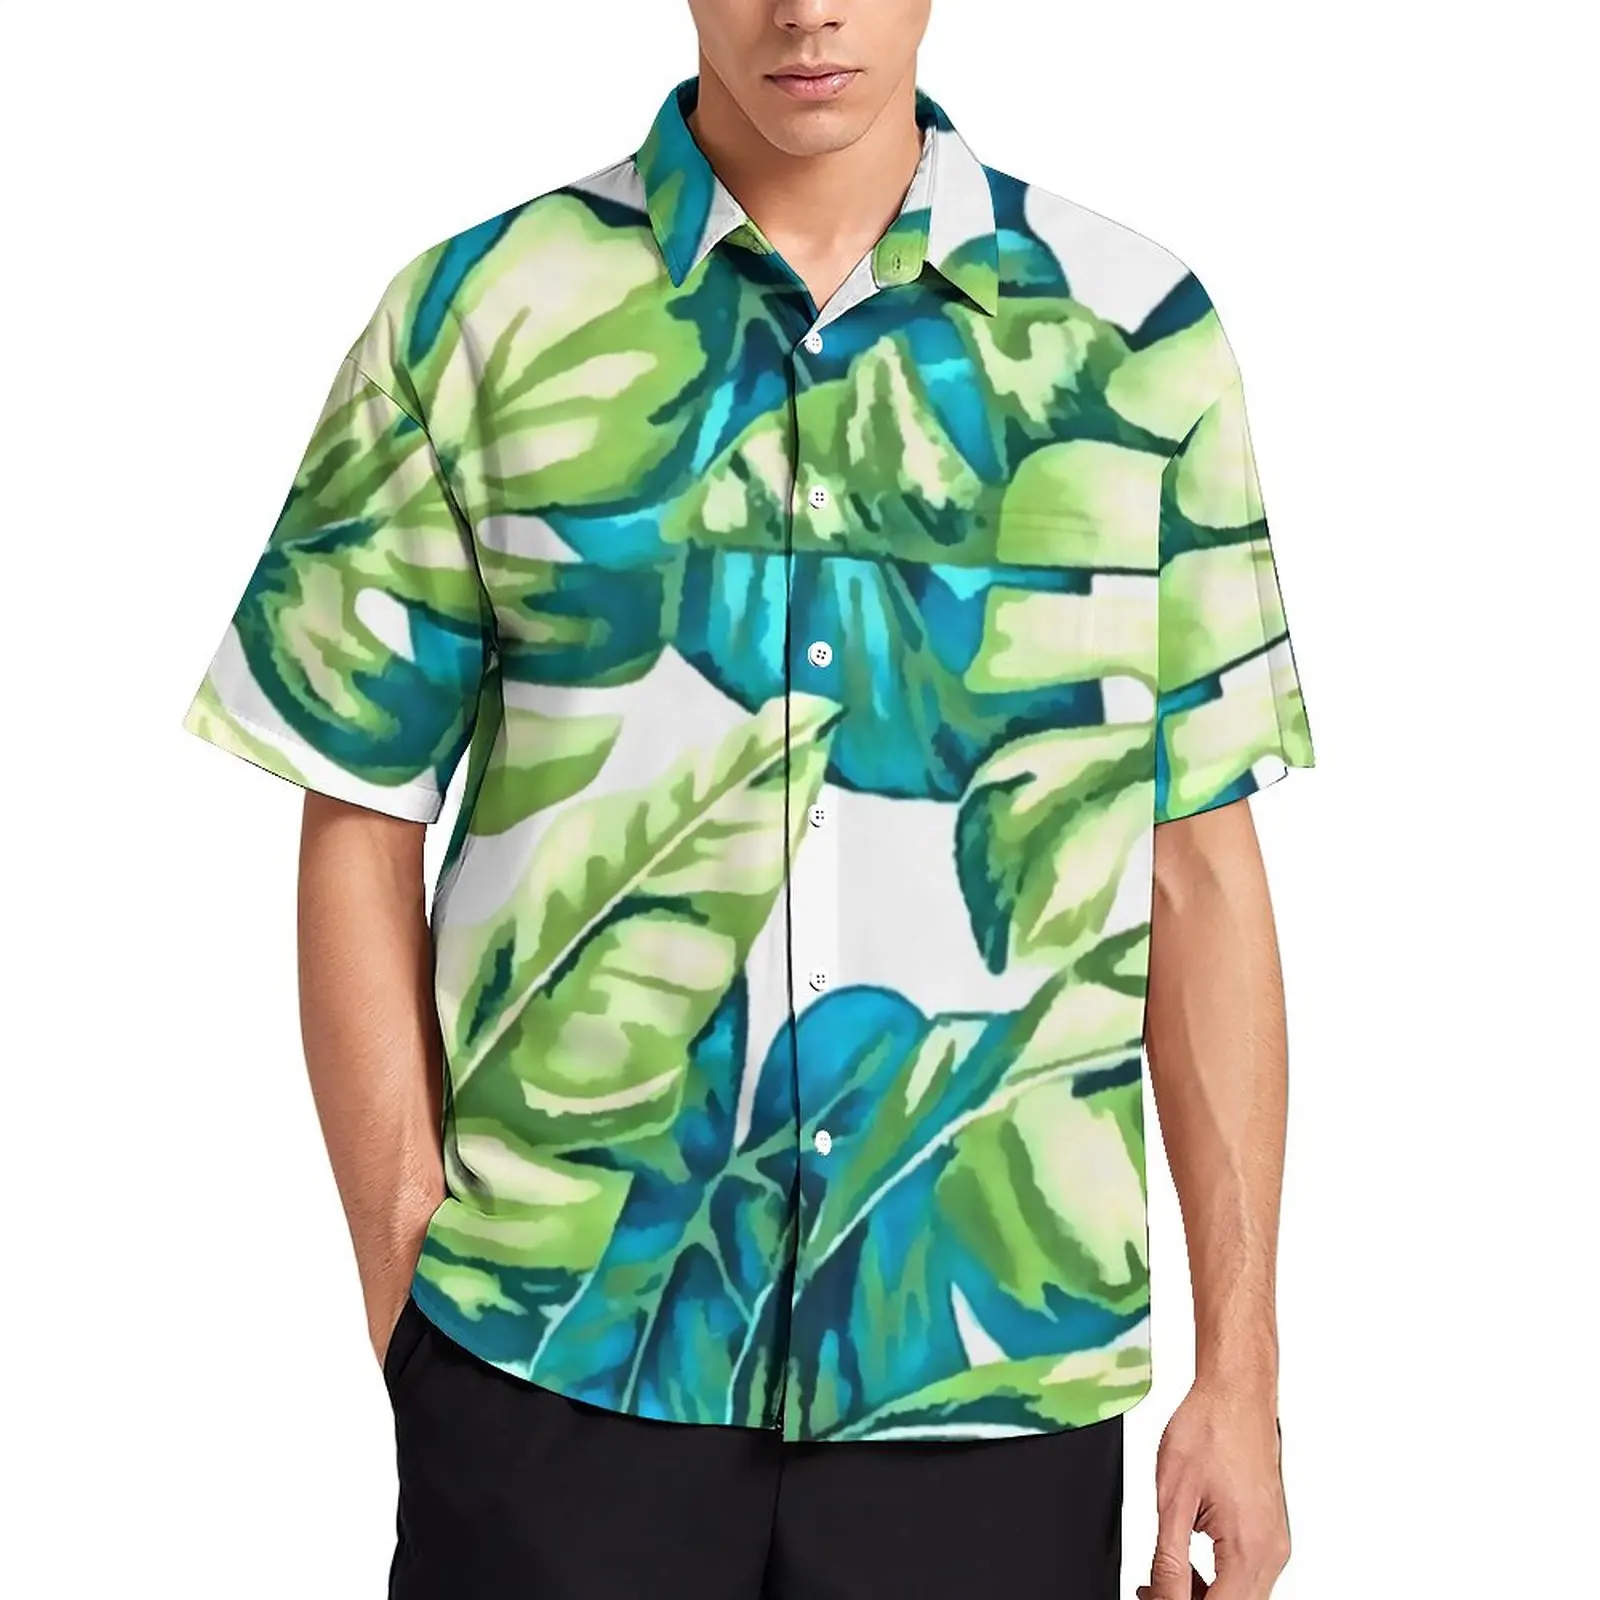 

Пляжная рубашка с цветными тропическими листьями, мужские повседневные Гавайские рубашки с принтом бананов и монстеры, винтажные блузки большого размера с коротким рукавом и графическим принтом